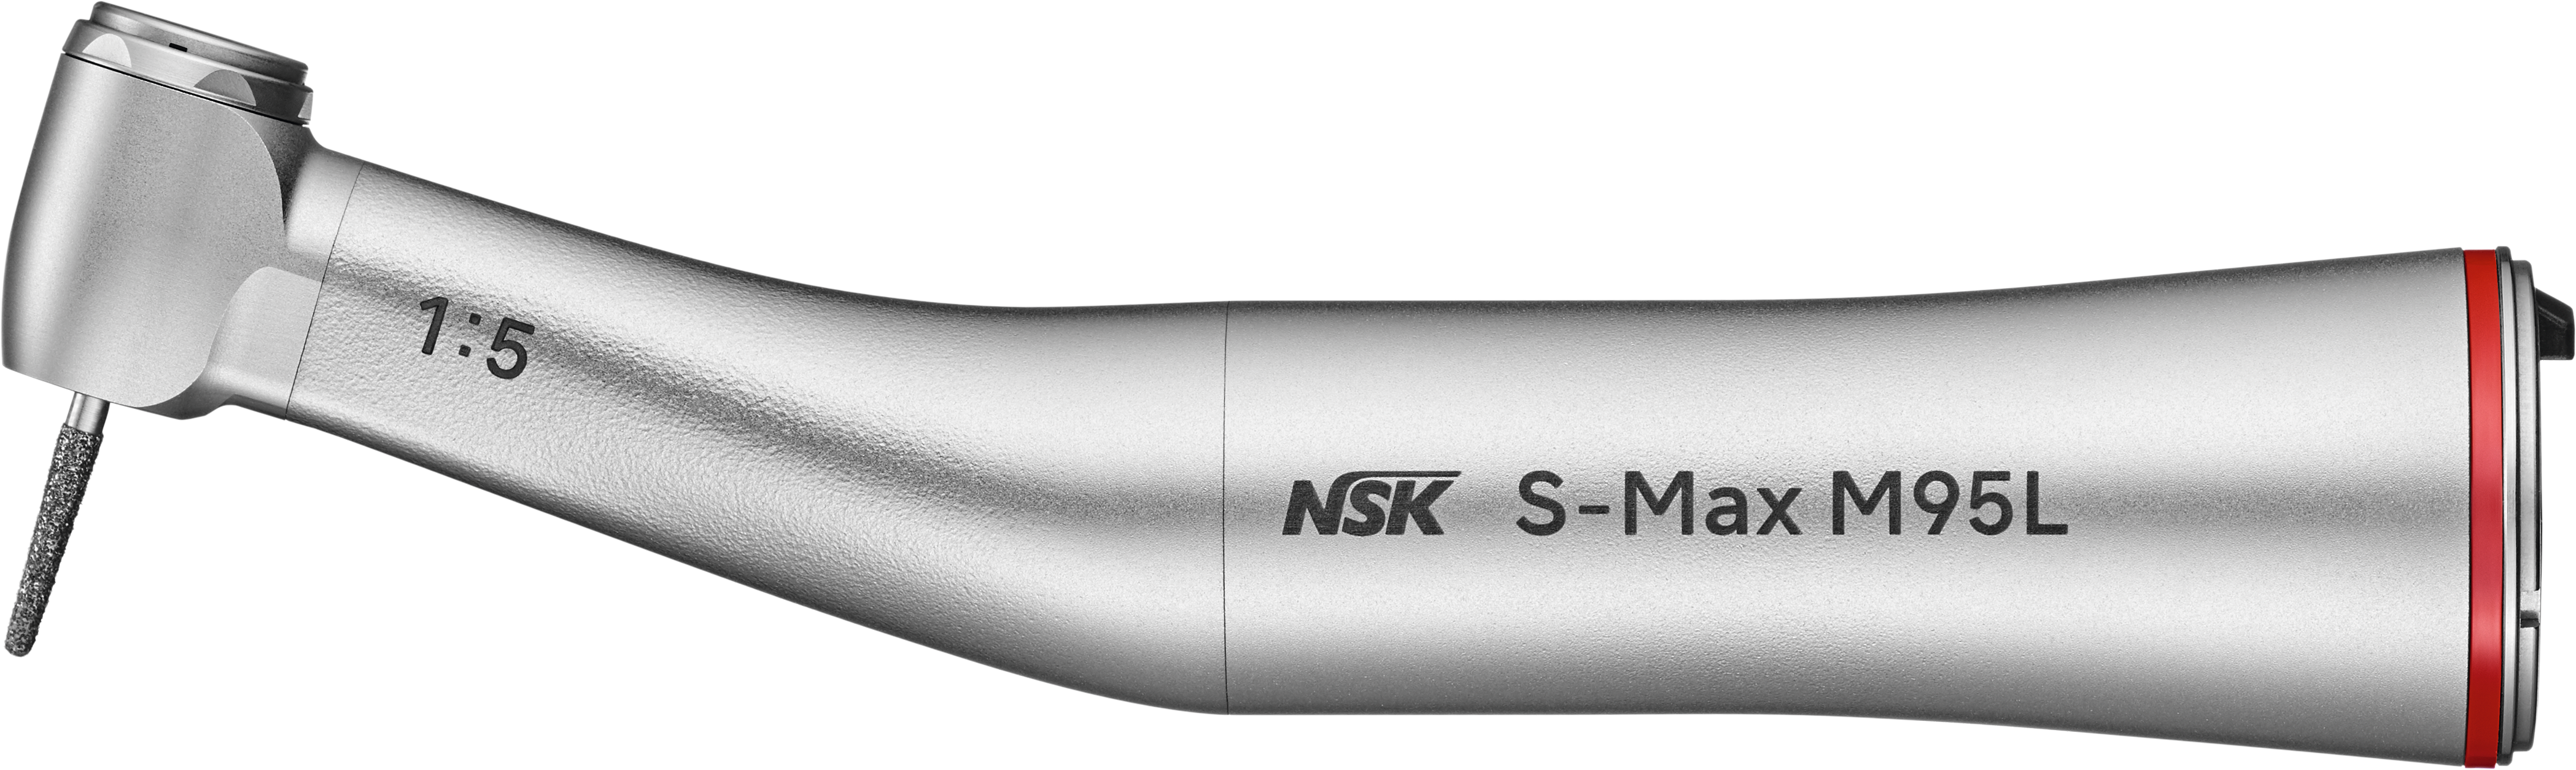 NSK S-Max M95L, Schnelllauf-Winkelstück mit Licht, rot 1:5 4-fach Spray, für FG-Bohrer Ø 1,6mm, Edelstahlkörper, Keramik-Kugellager